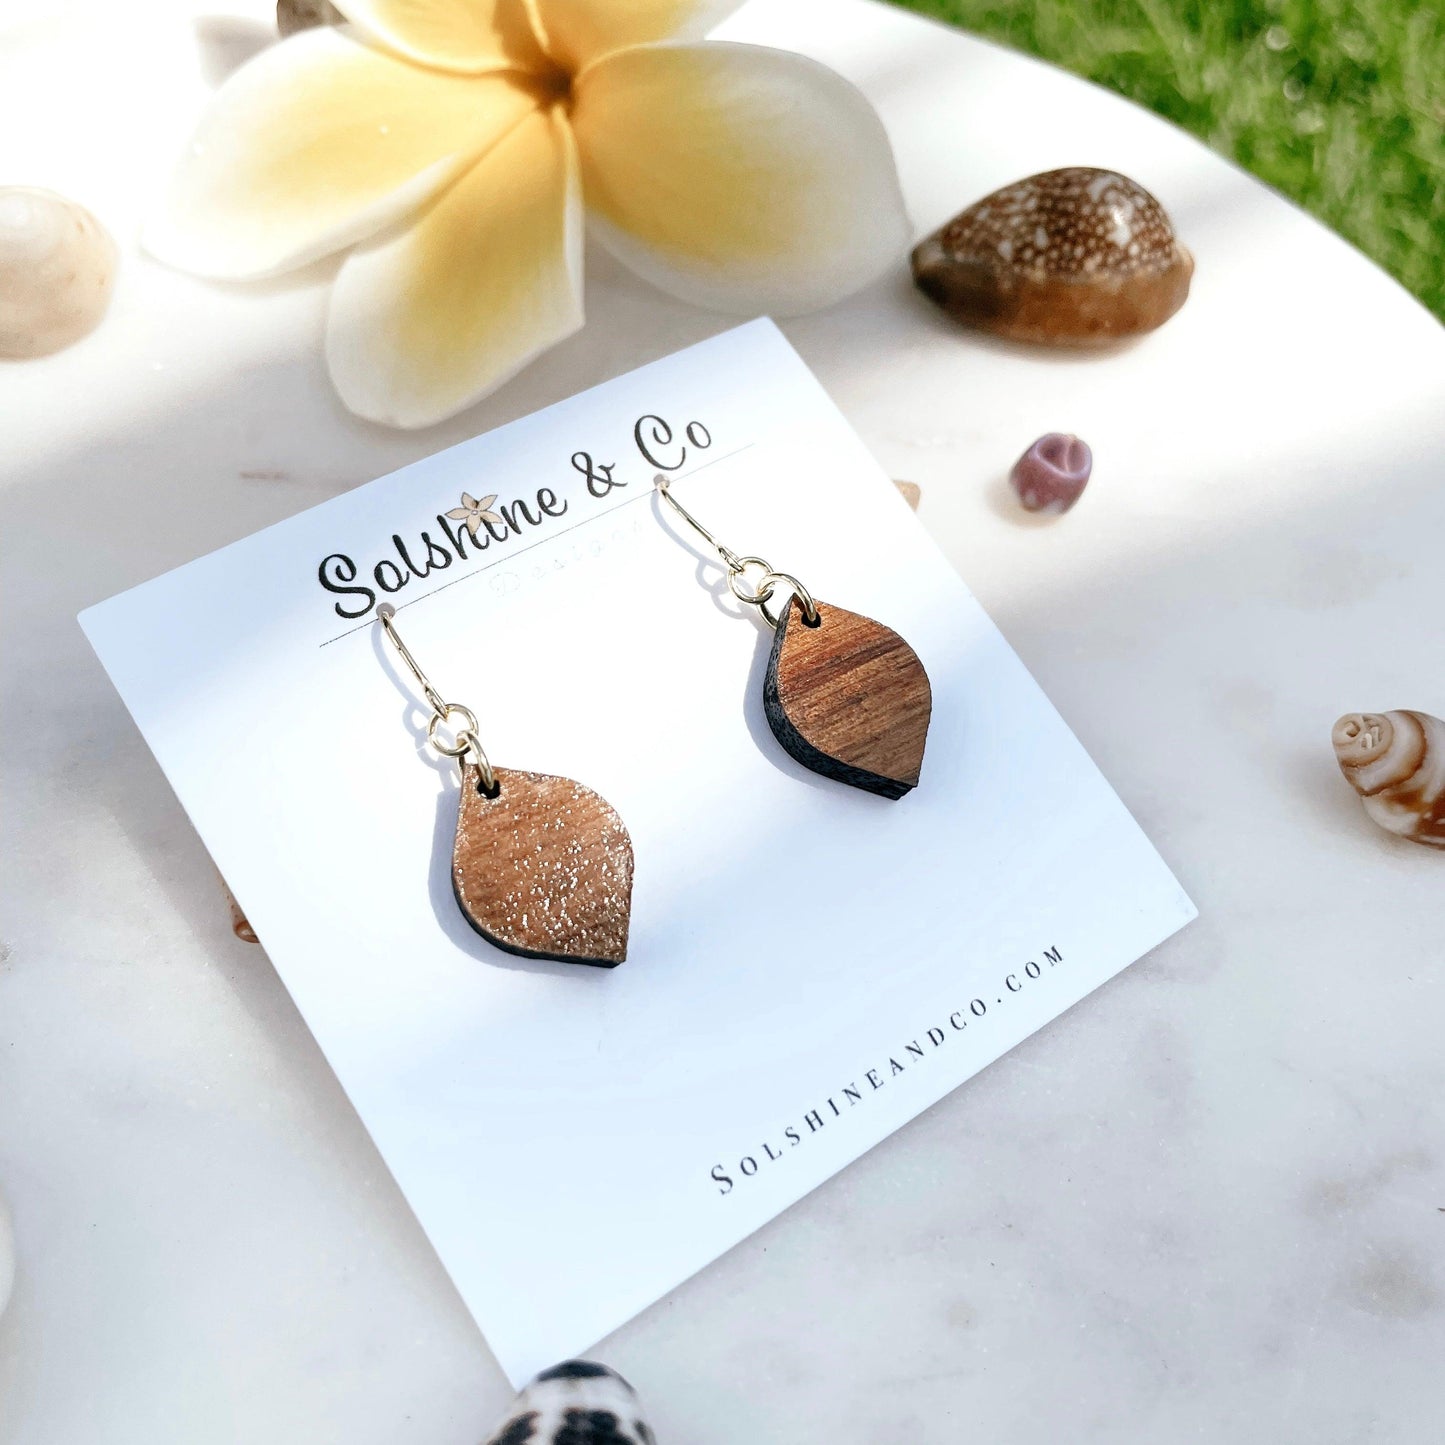 Small Koa Dangle Earrings - Solshine and Co